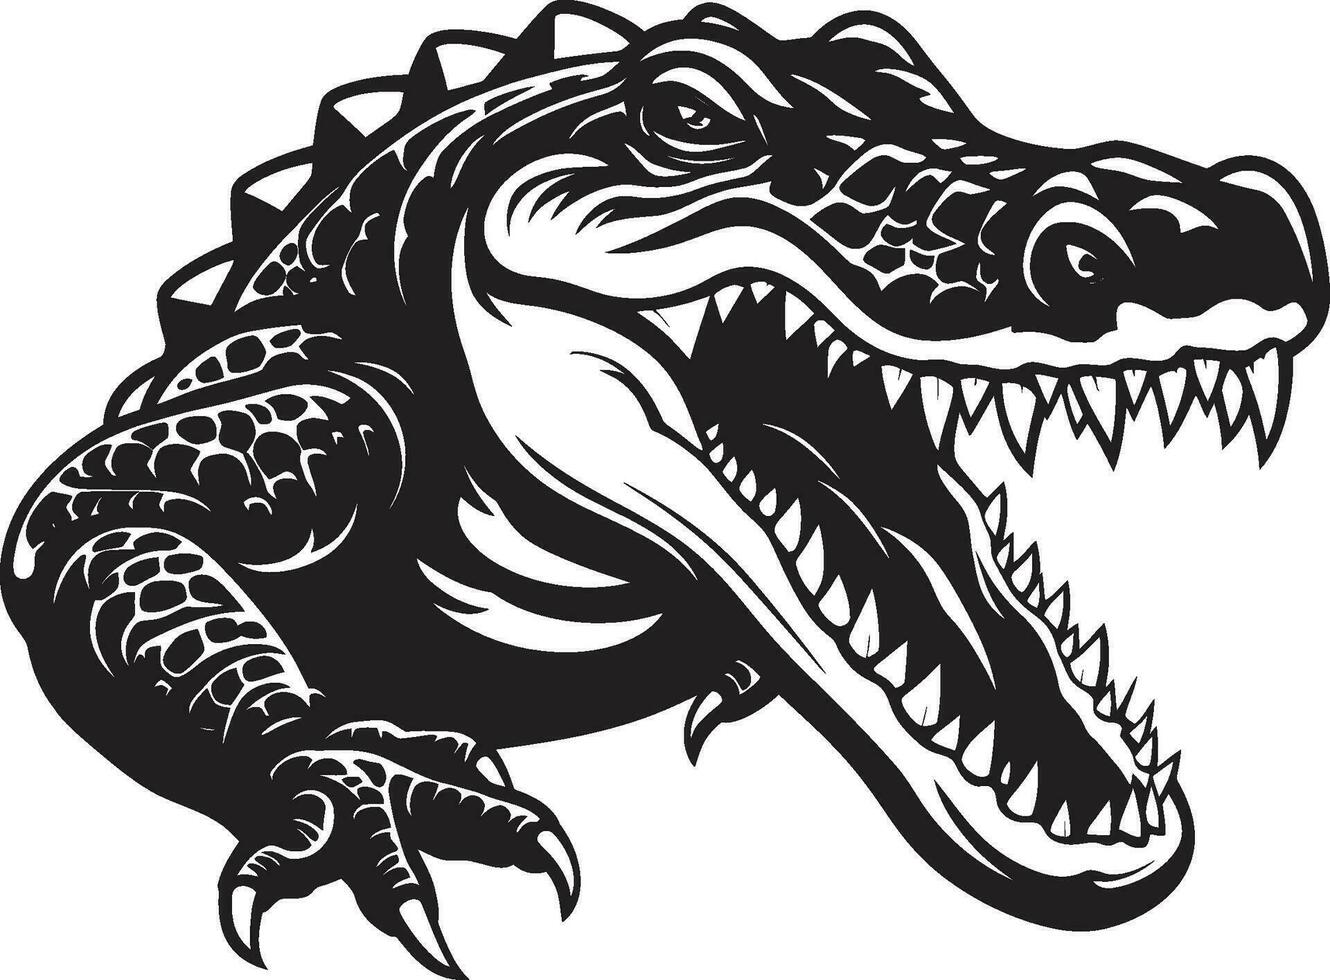 agguato scala re nero alligatore icona natura selvaggia predatore alligatore vettore logo